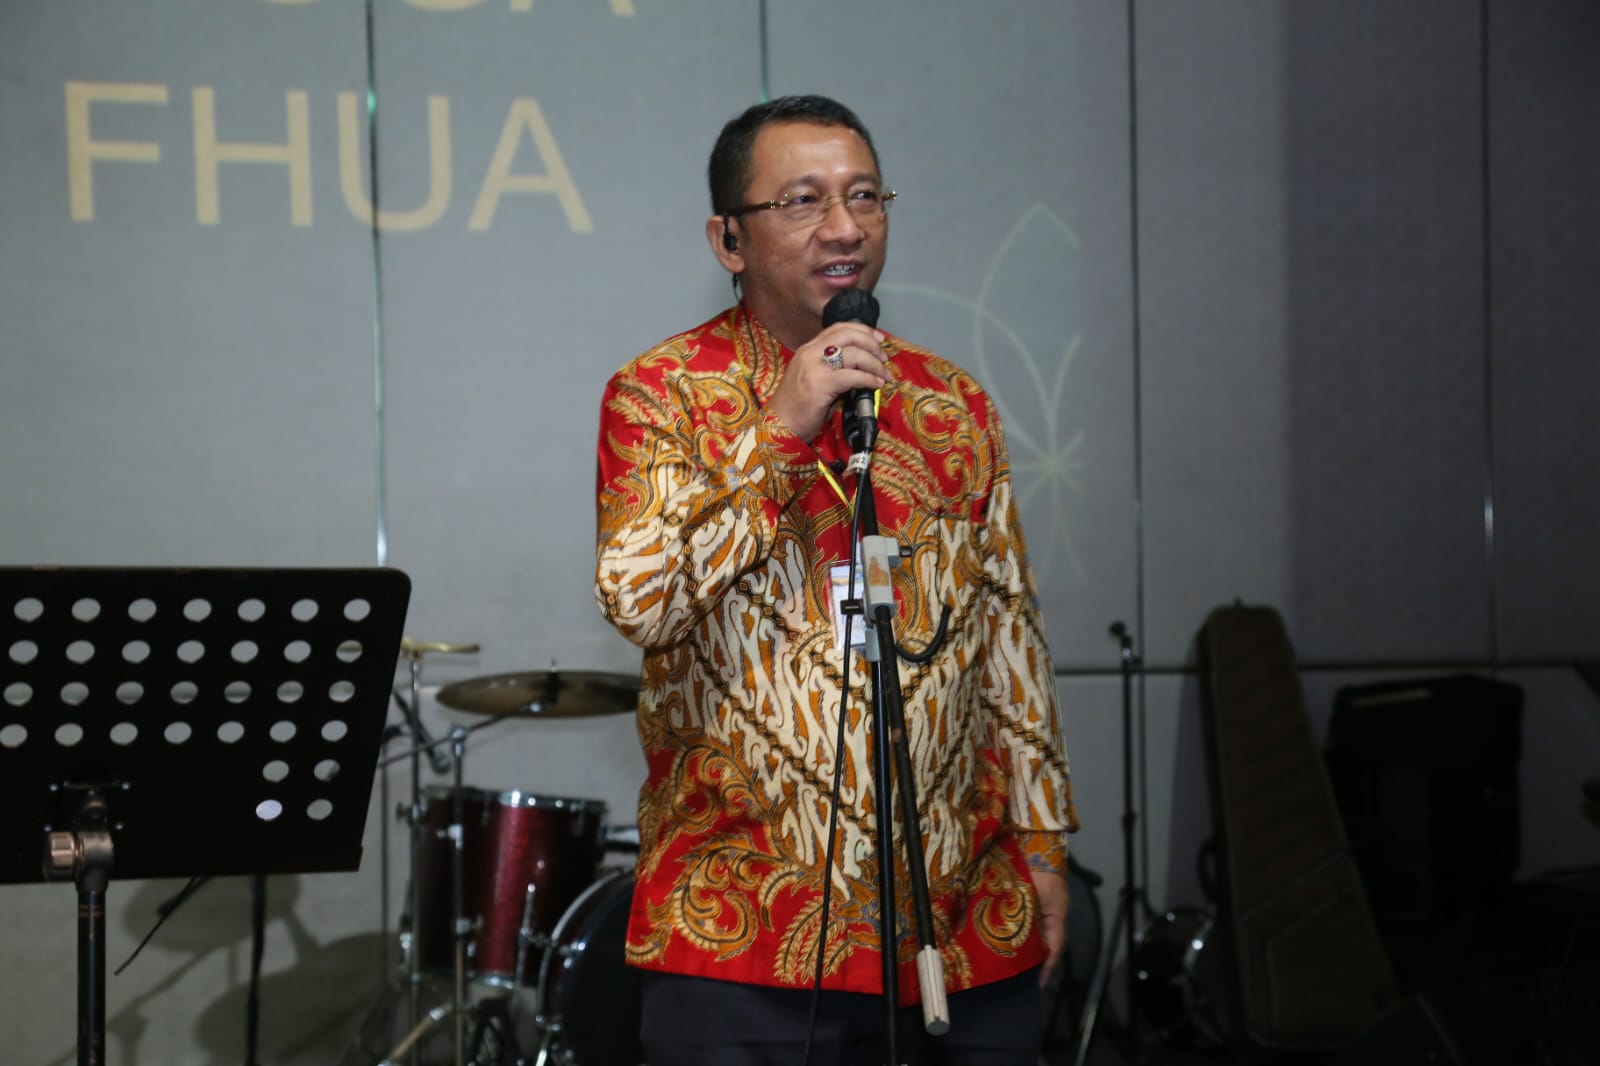 Edy Torana Promotor Jadi Donatur Tunggal, Acara Halal Bihalal Akbar Alumni FH Unair Surabaya Angkatan 1969 – 2017